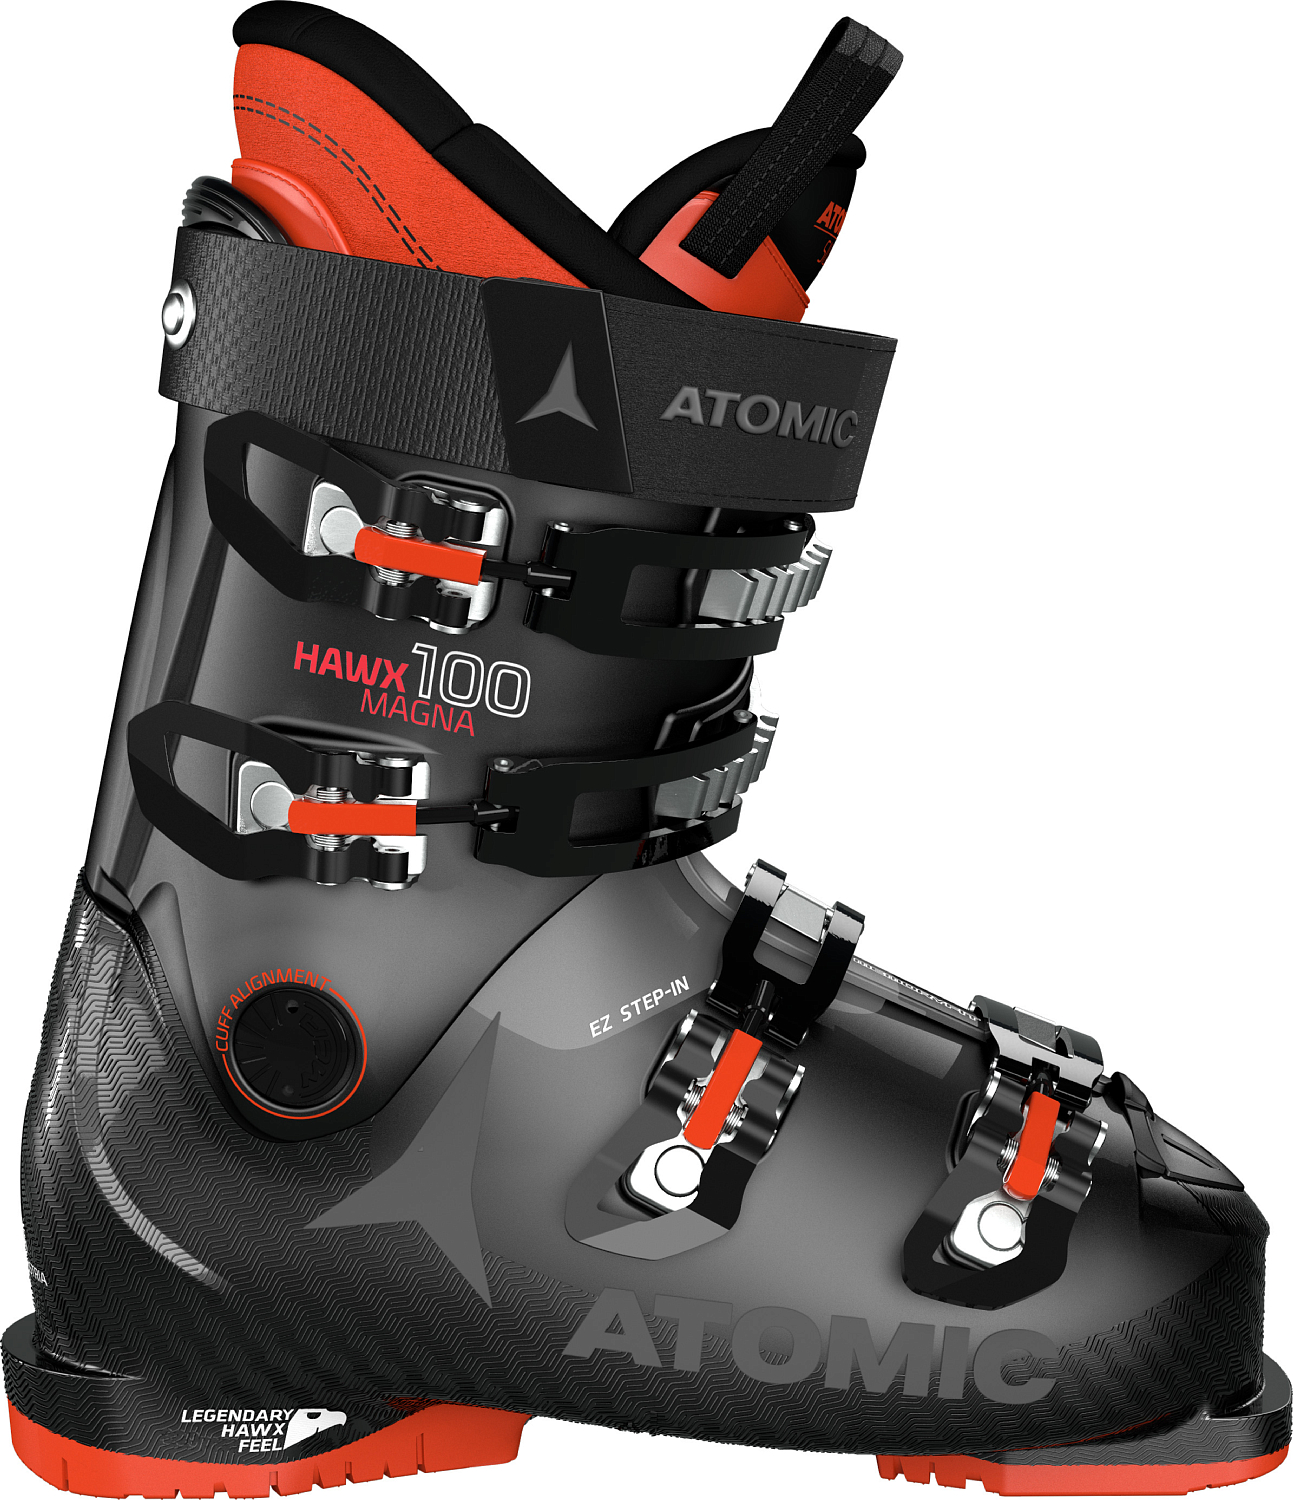 Горнолыжные ботинки ATOMIC HAWX MAGNA 100 Black/Anthrac